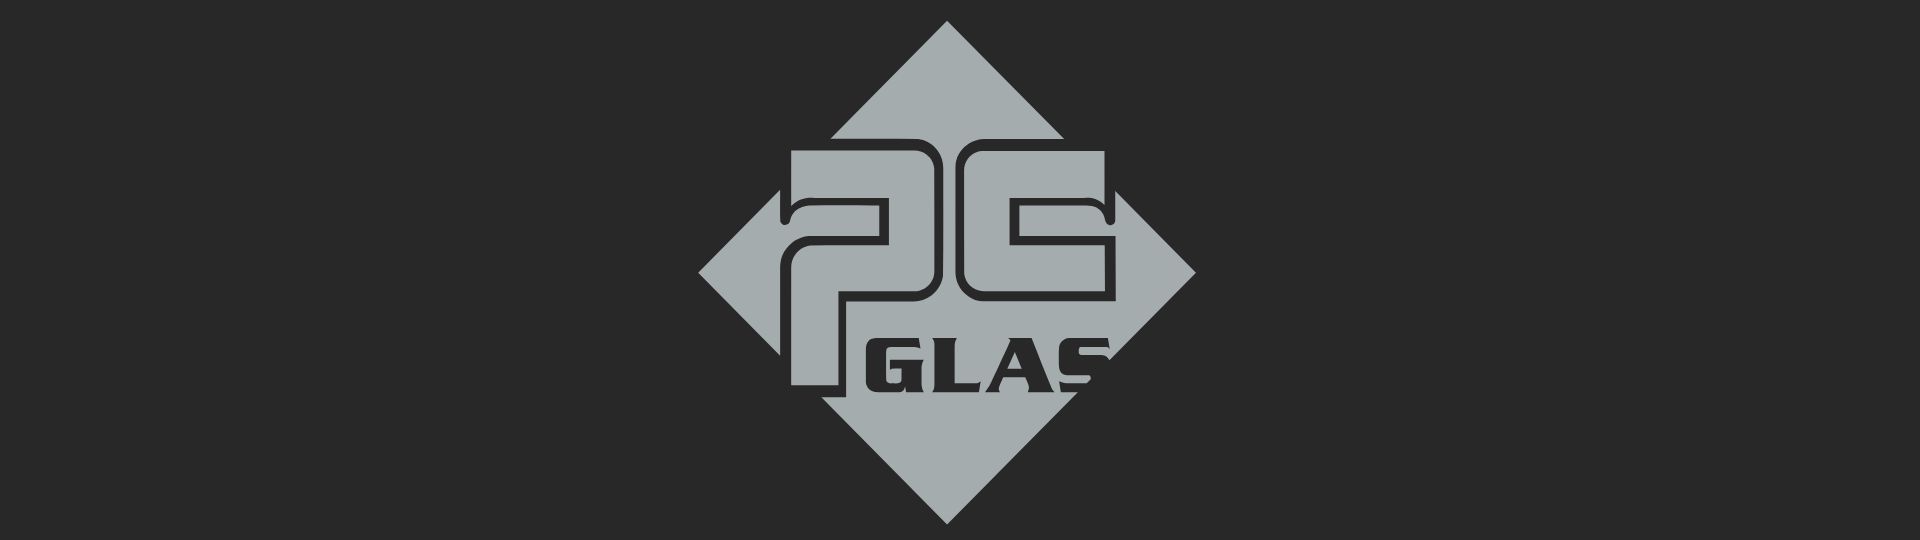 Hvem er PC Glas A/S?